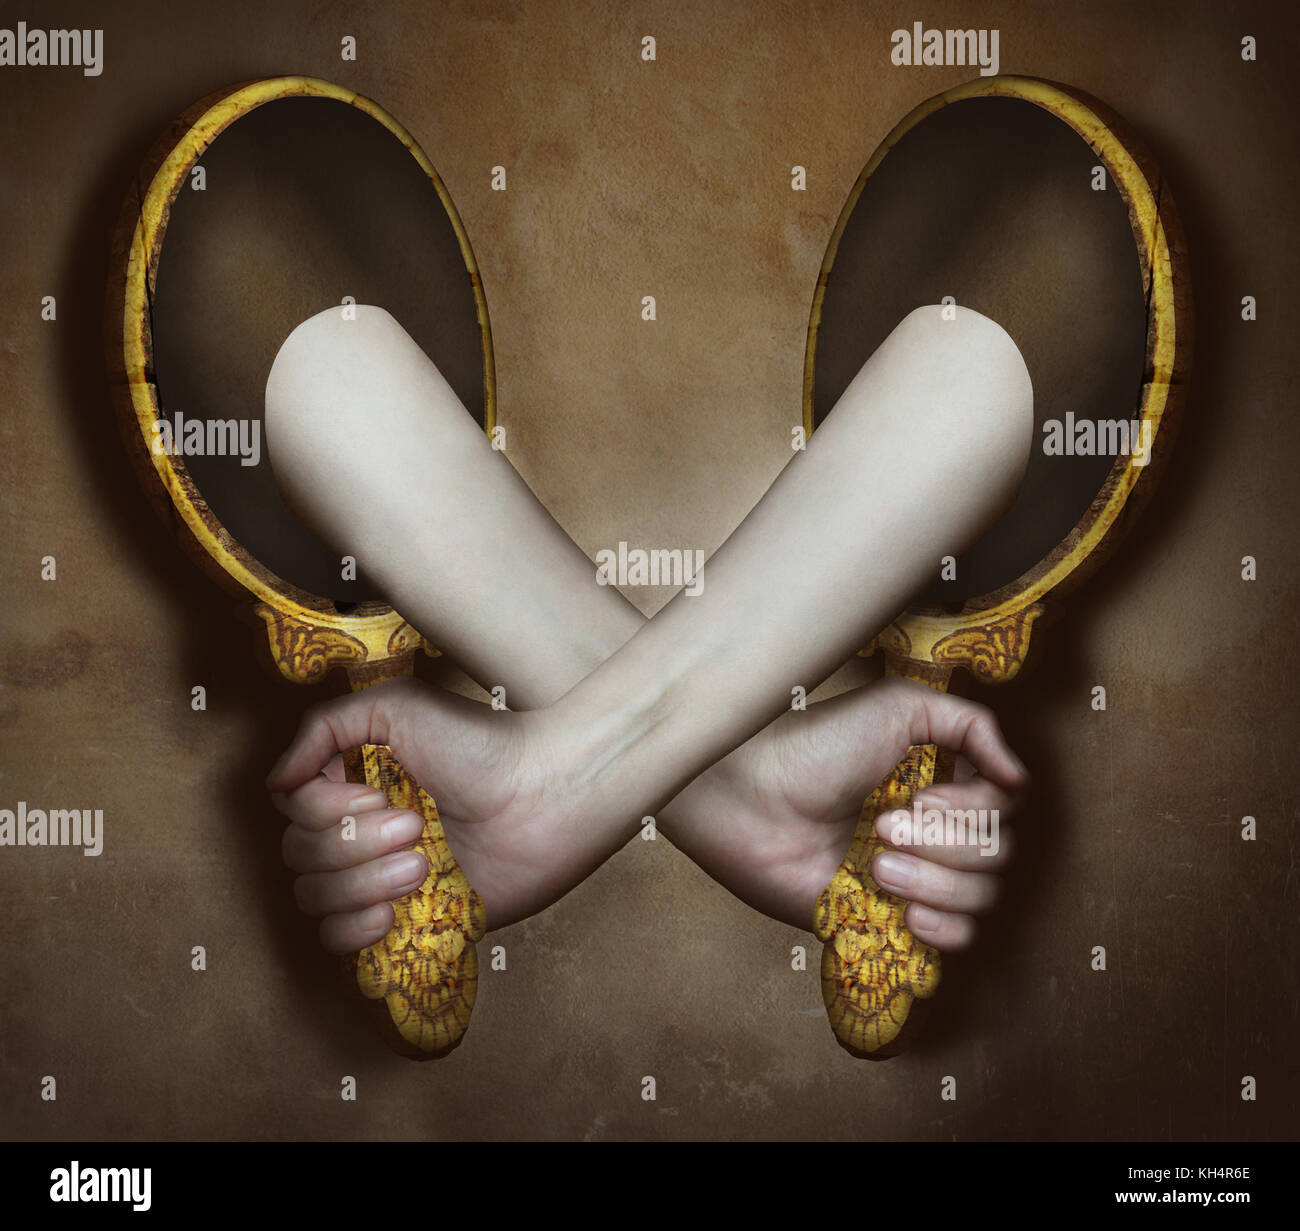 Image surréaliste représente deux bras et mains sortant de deux miroirs qui soutiennent les uns les autres Banque D'Images